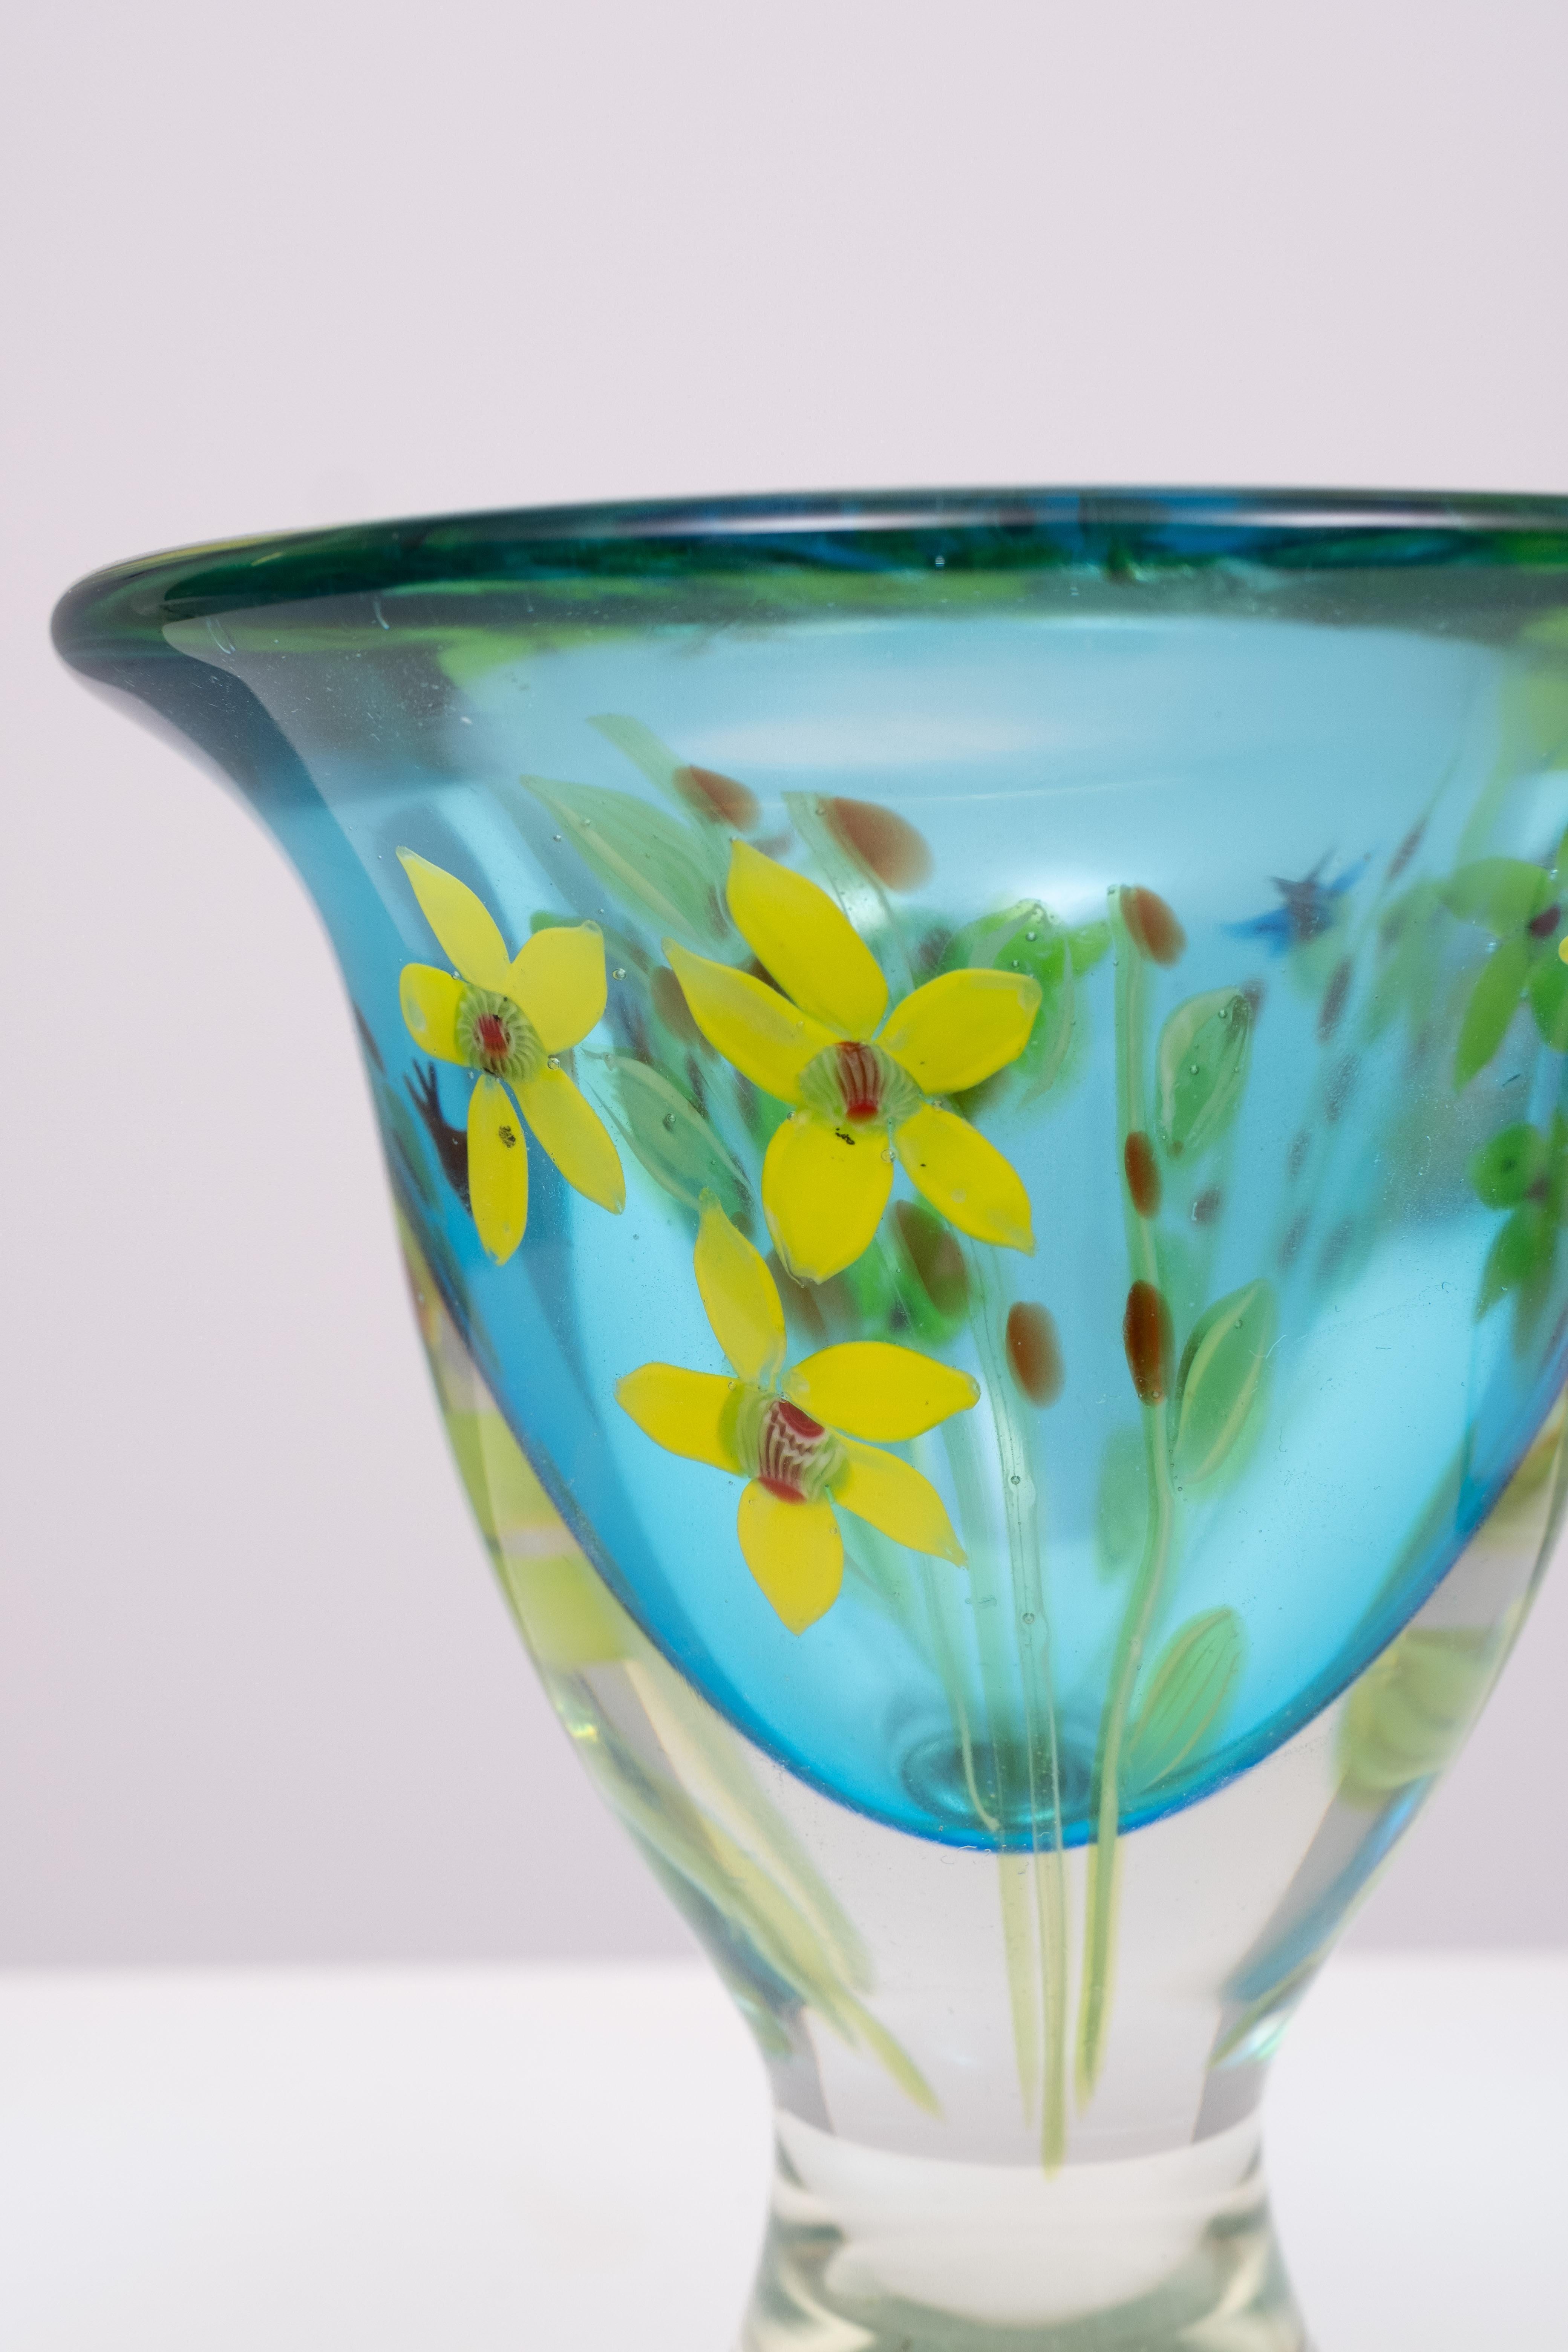 Mid-Century Modern Berit Johansson Art Glass Vase by Murano 1970s Sweden  For Sale